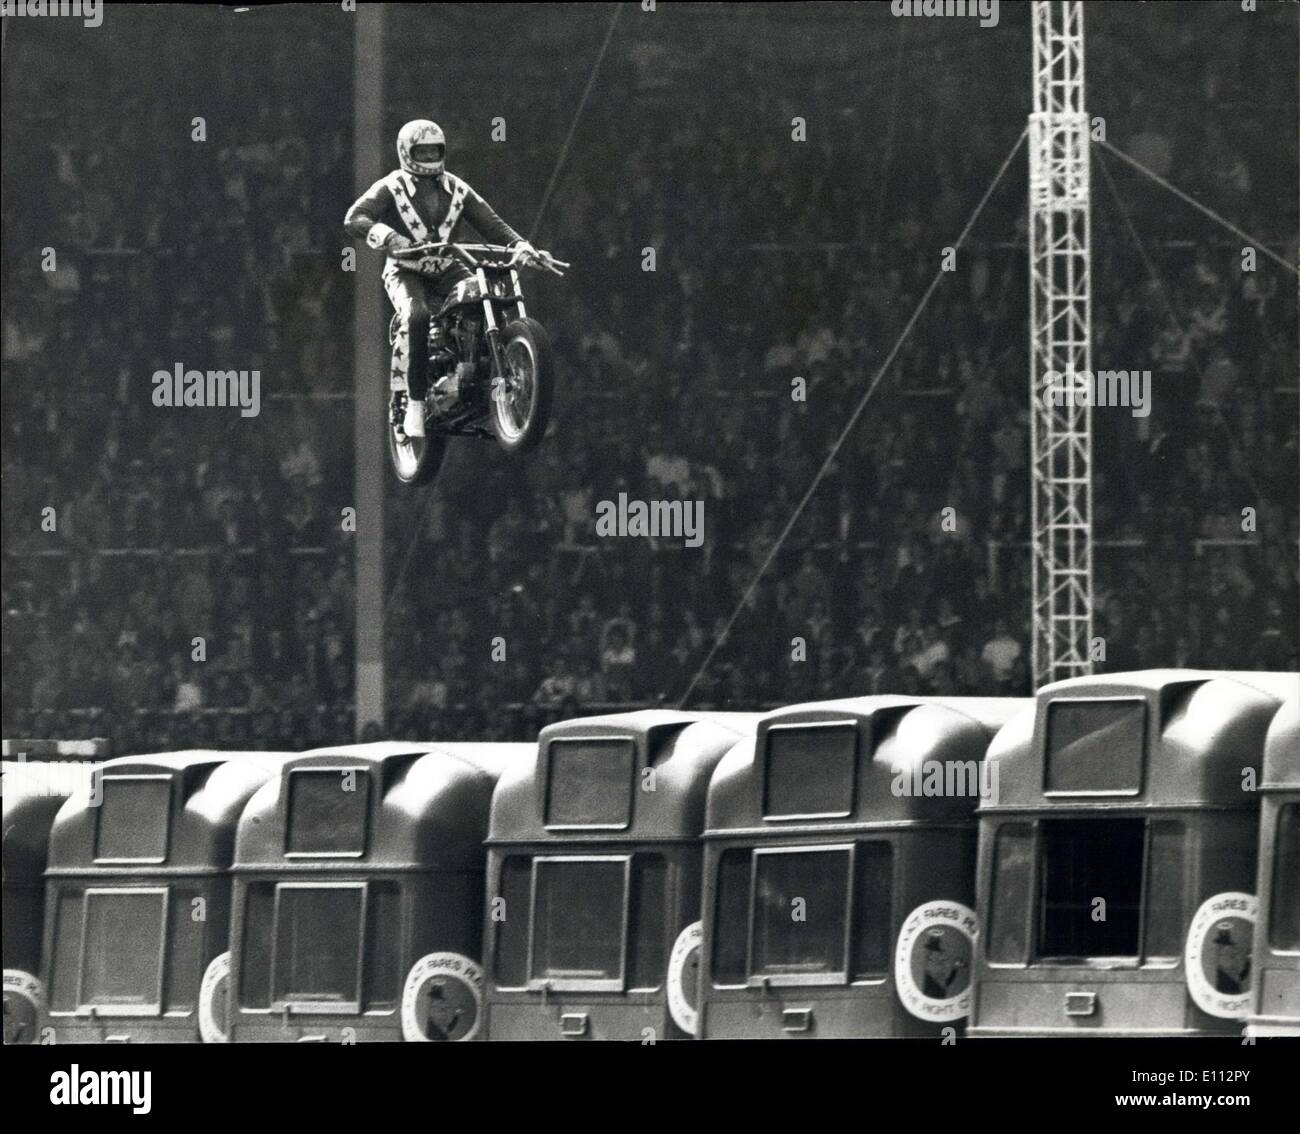 27 maggio 1975 - Stuntman Evel Knievel si blocca nel ciclo motore salto oltre 13 autobus.: American motor cycle stuntman Evel Knievel è stato Foto Stock